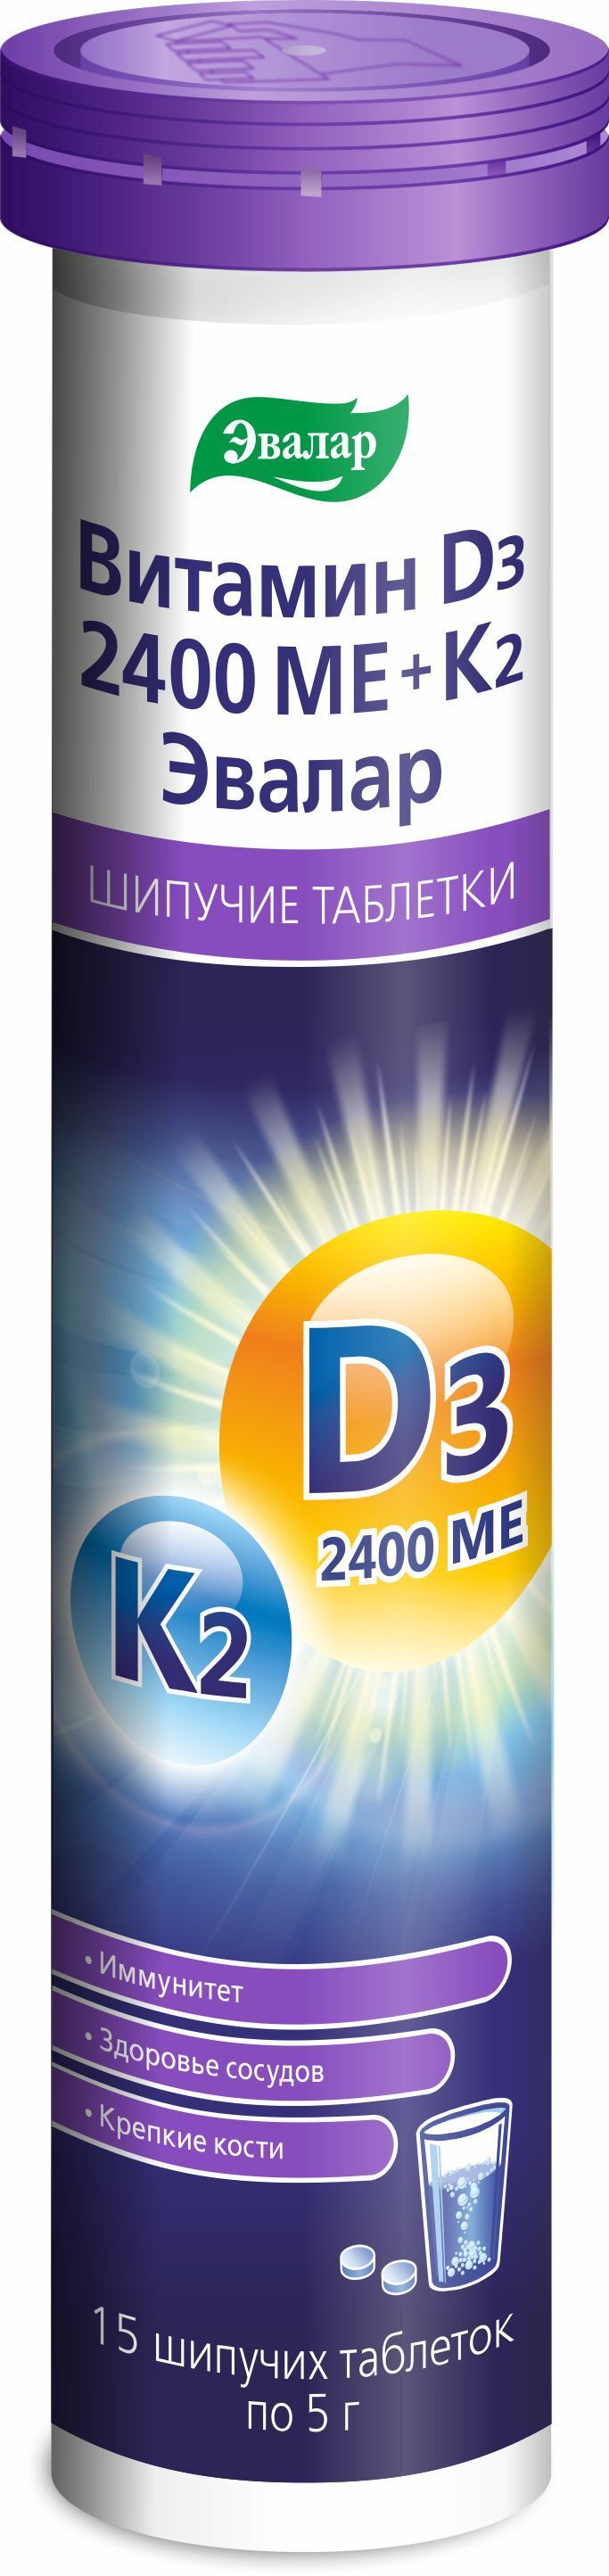 фото упаковки Витамин Д3 2400 МЕ + К2